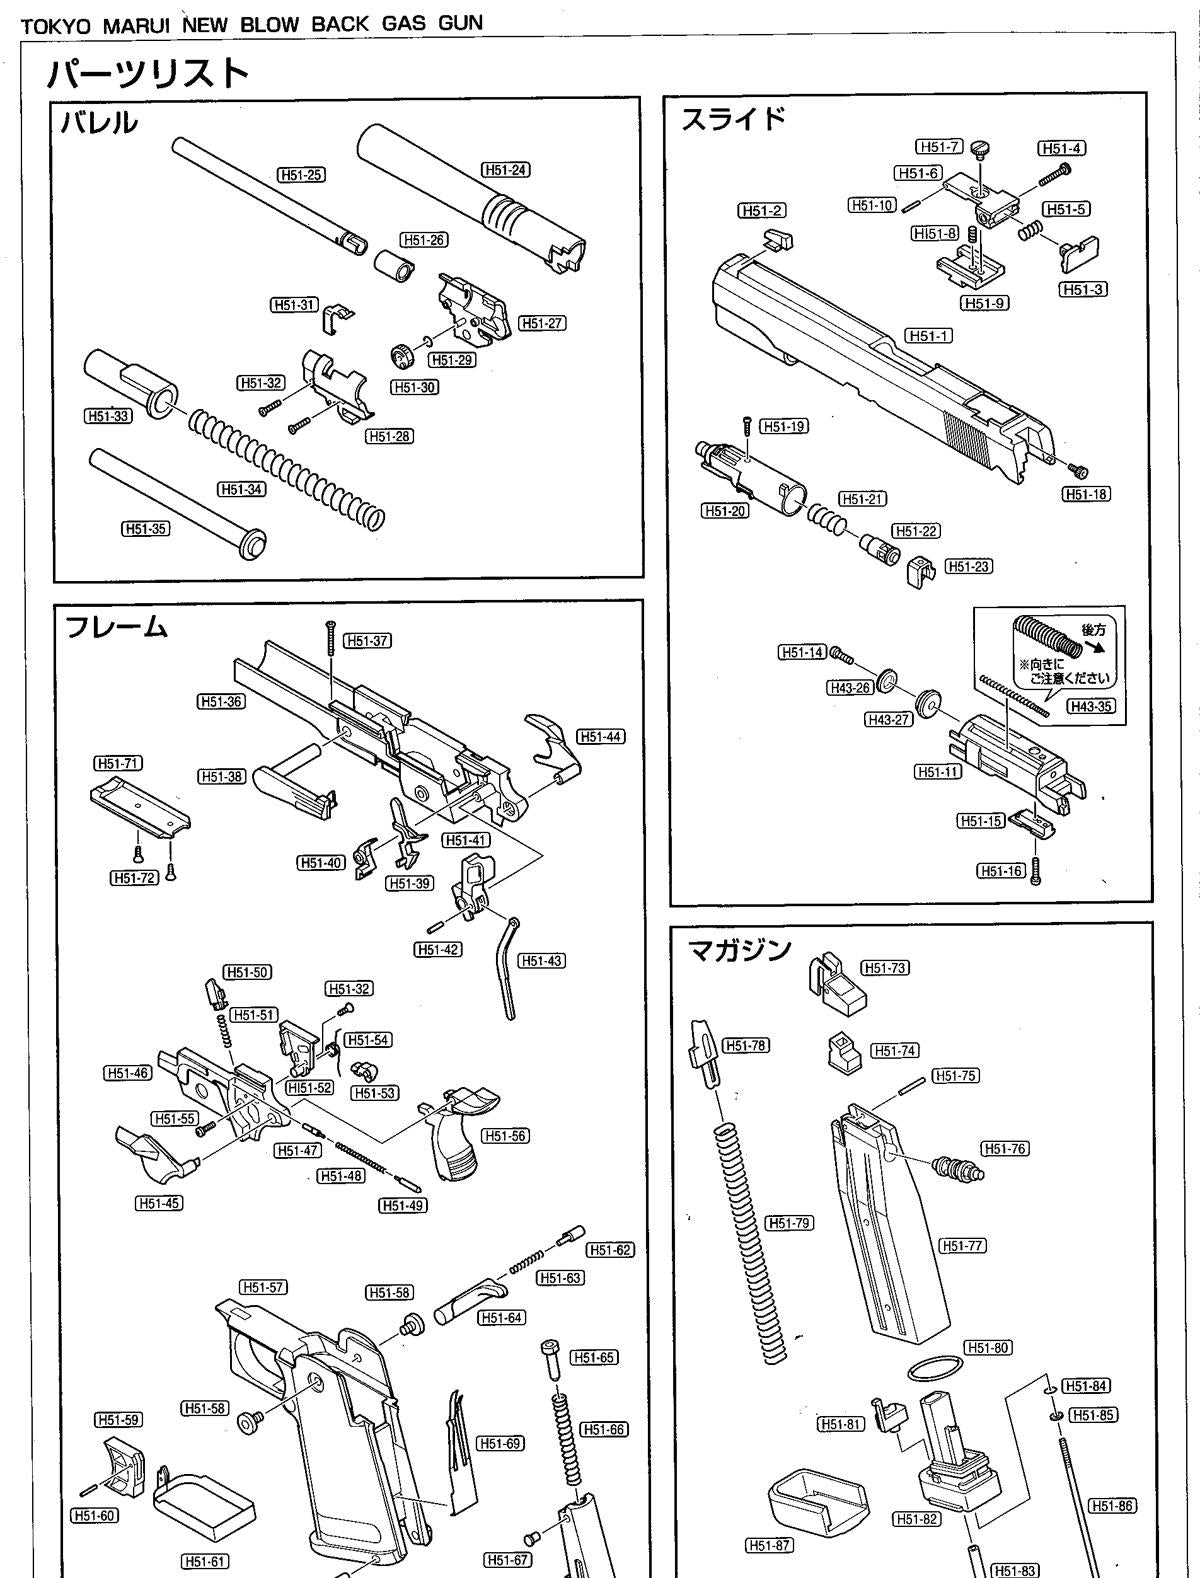 Tokyo Marui Hi-Capa - Part H51-51 - Valve Knocker Sear spring - Ebog Designs